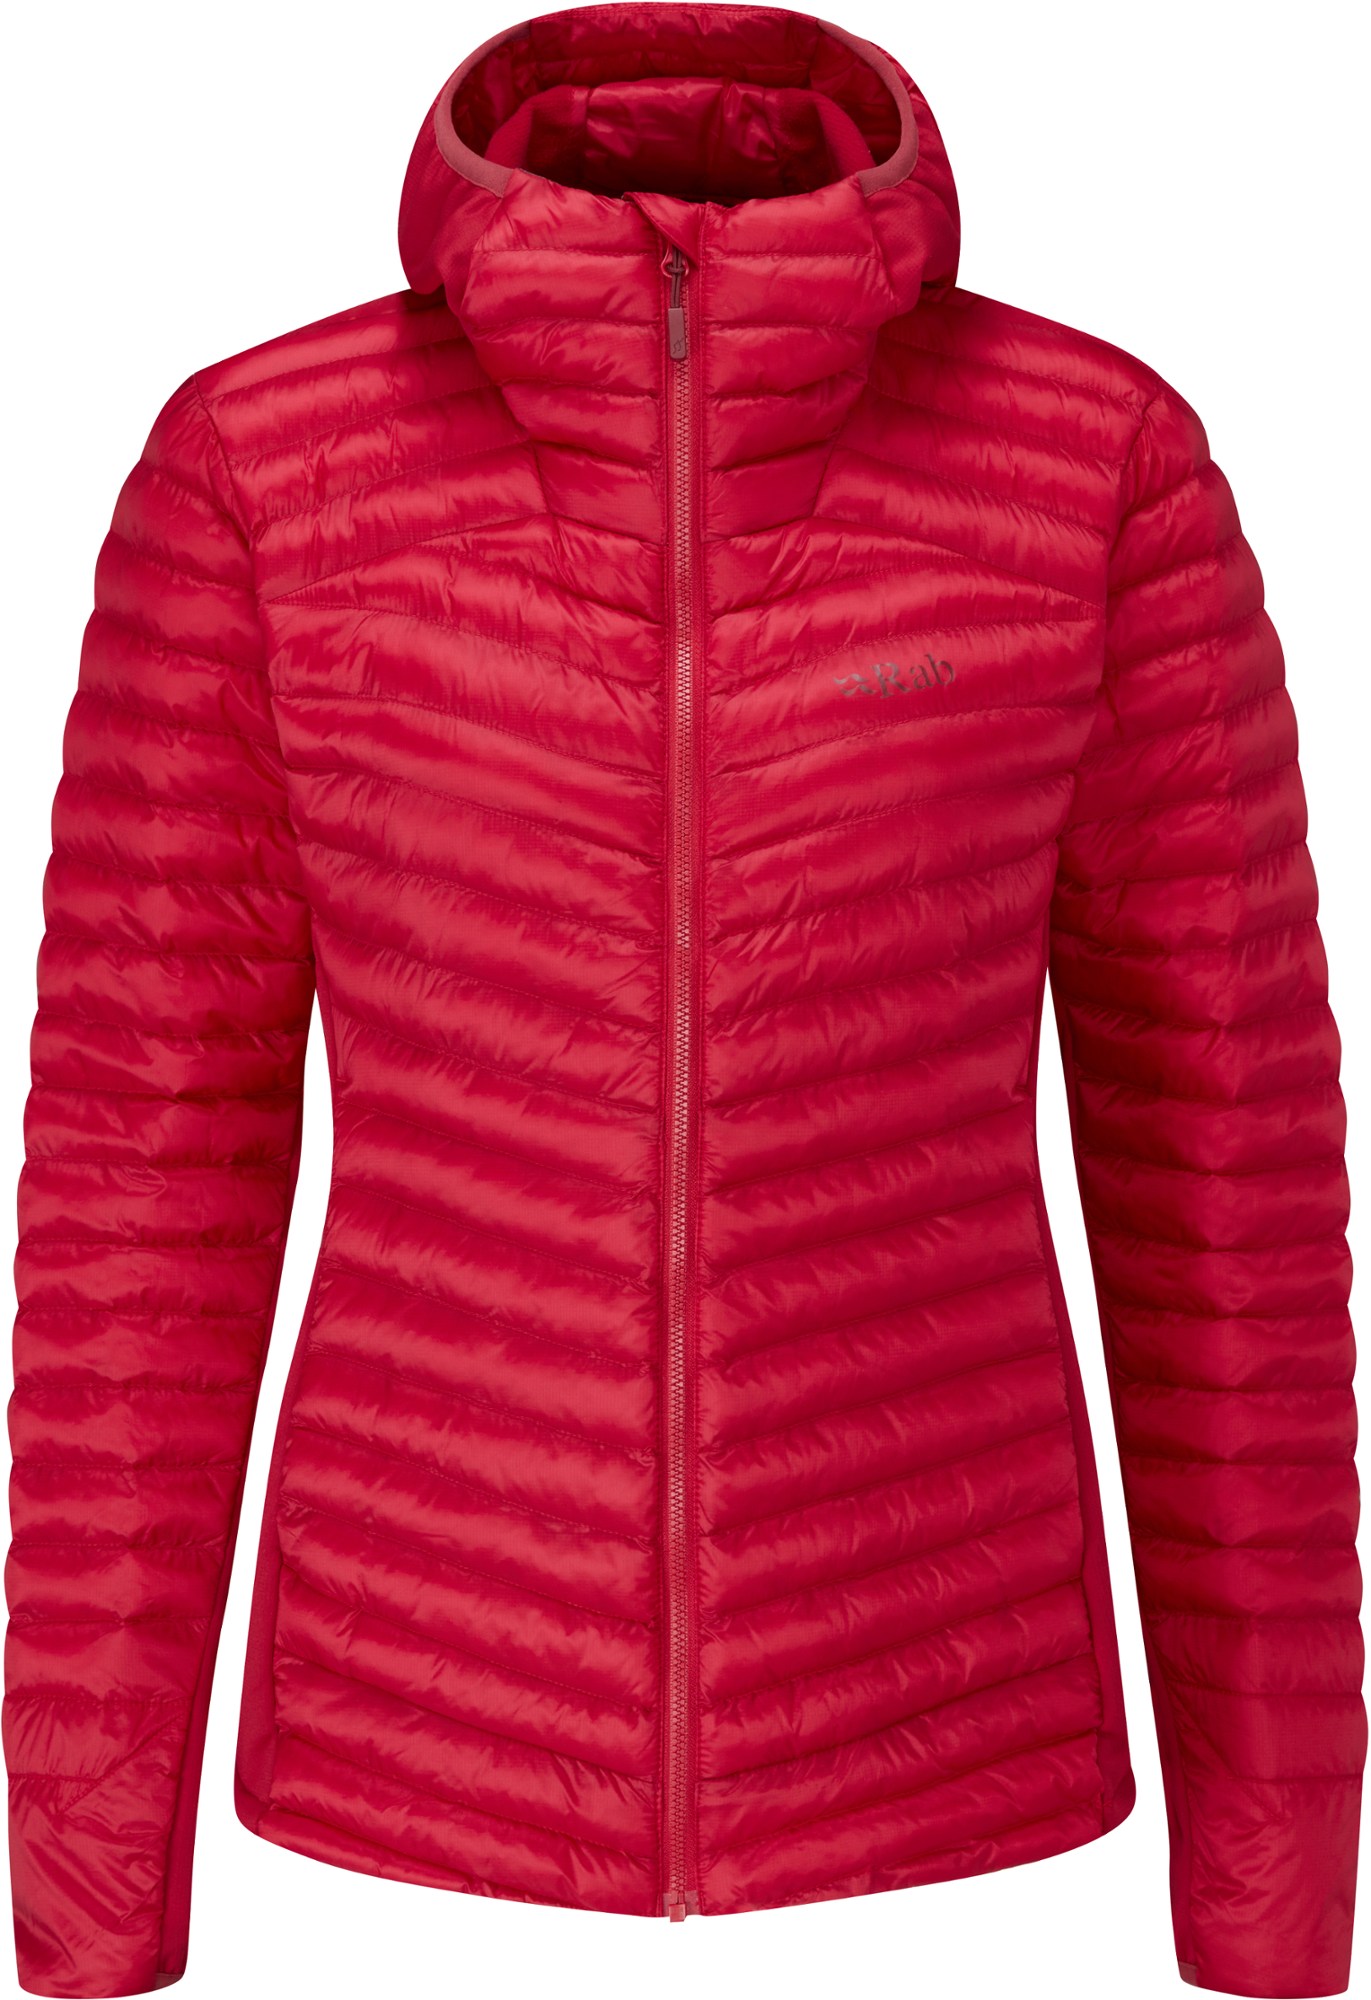 Утепленная толстовка Cirrus Flex 2.0 — женская Rab, красный куртка rab cirrus flex 2 0 hooded синий